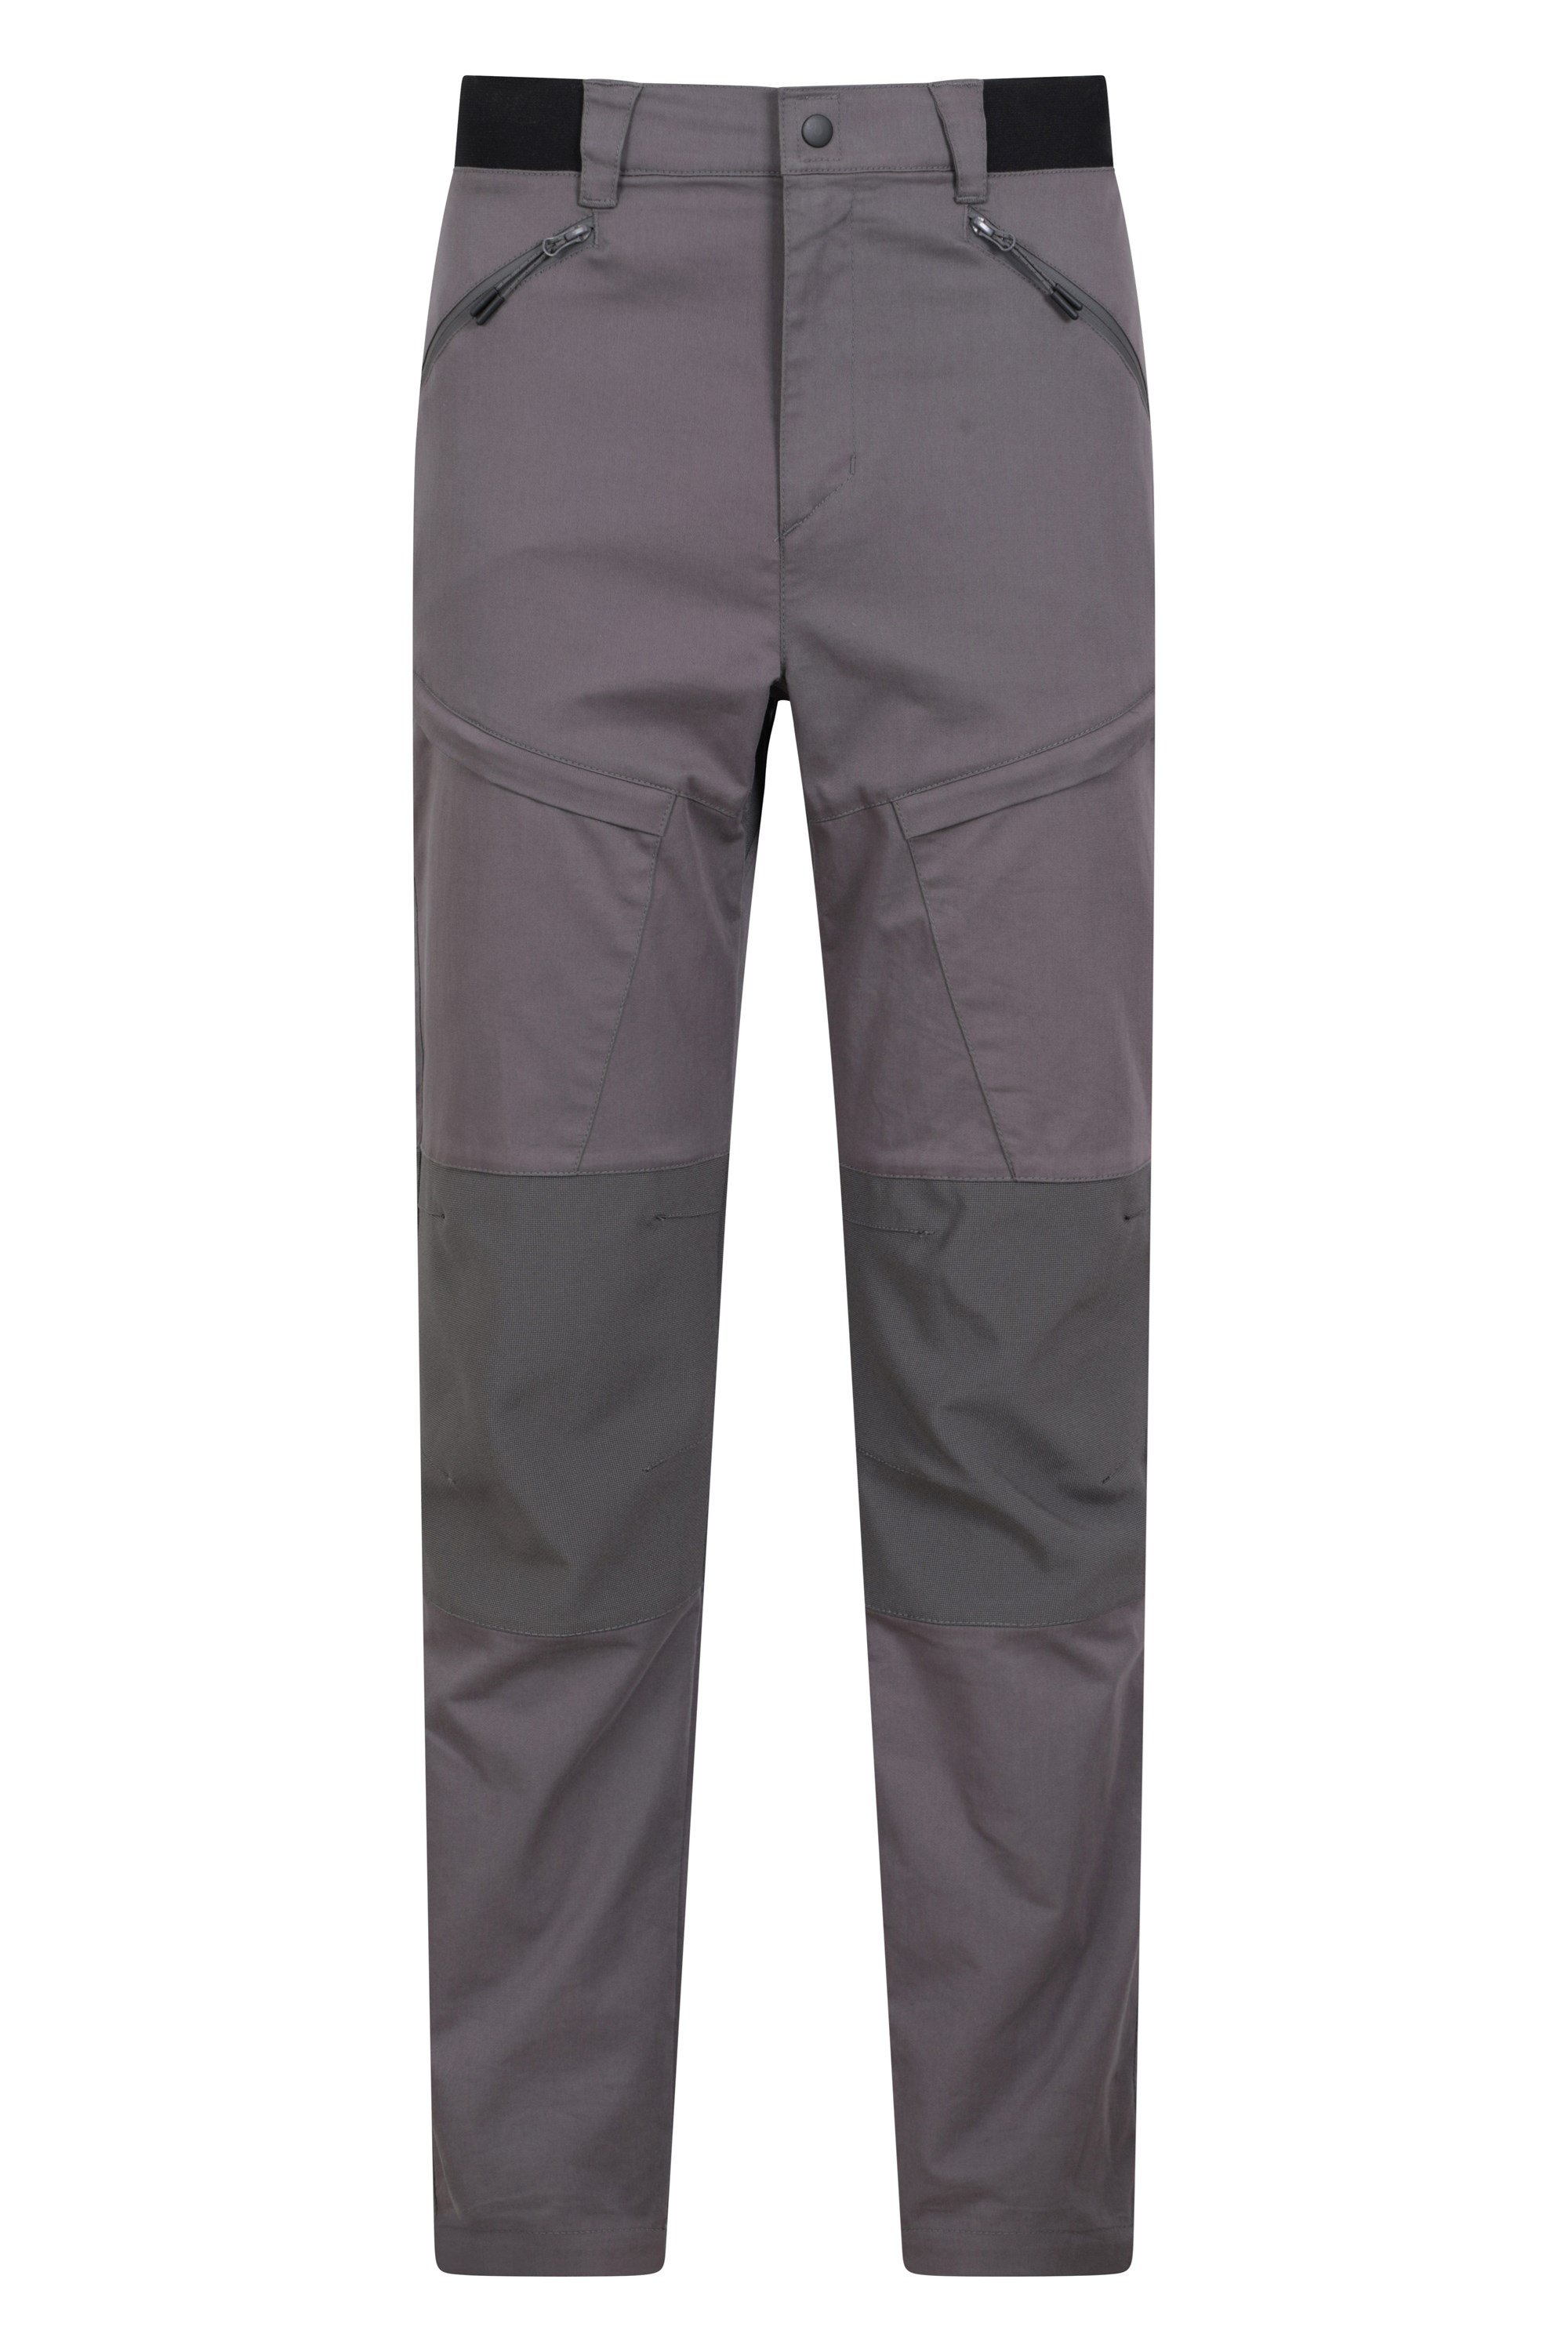 Jungle Mens Trekking Trousers - Short Length - Grey